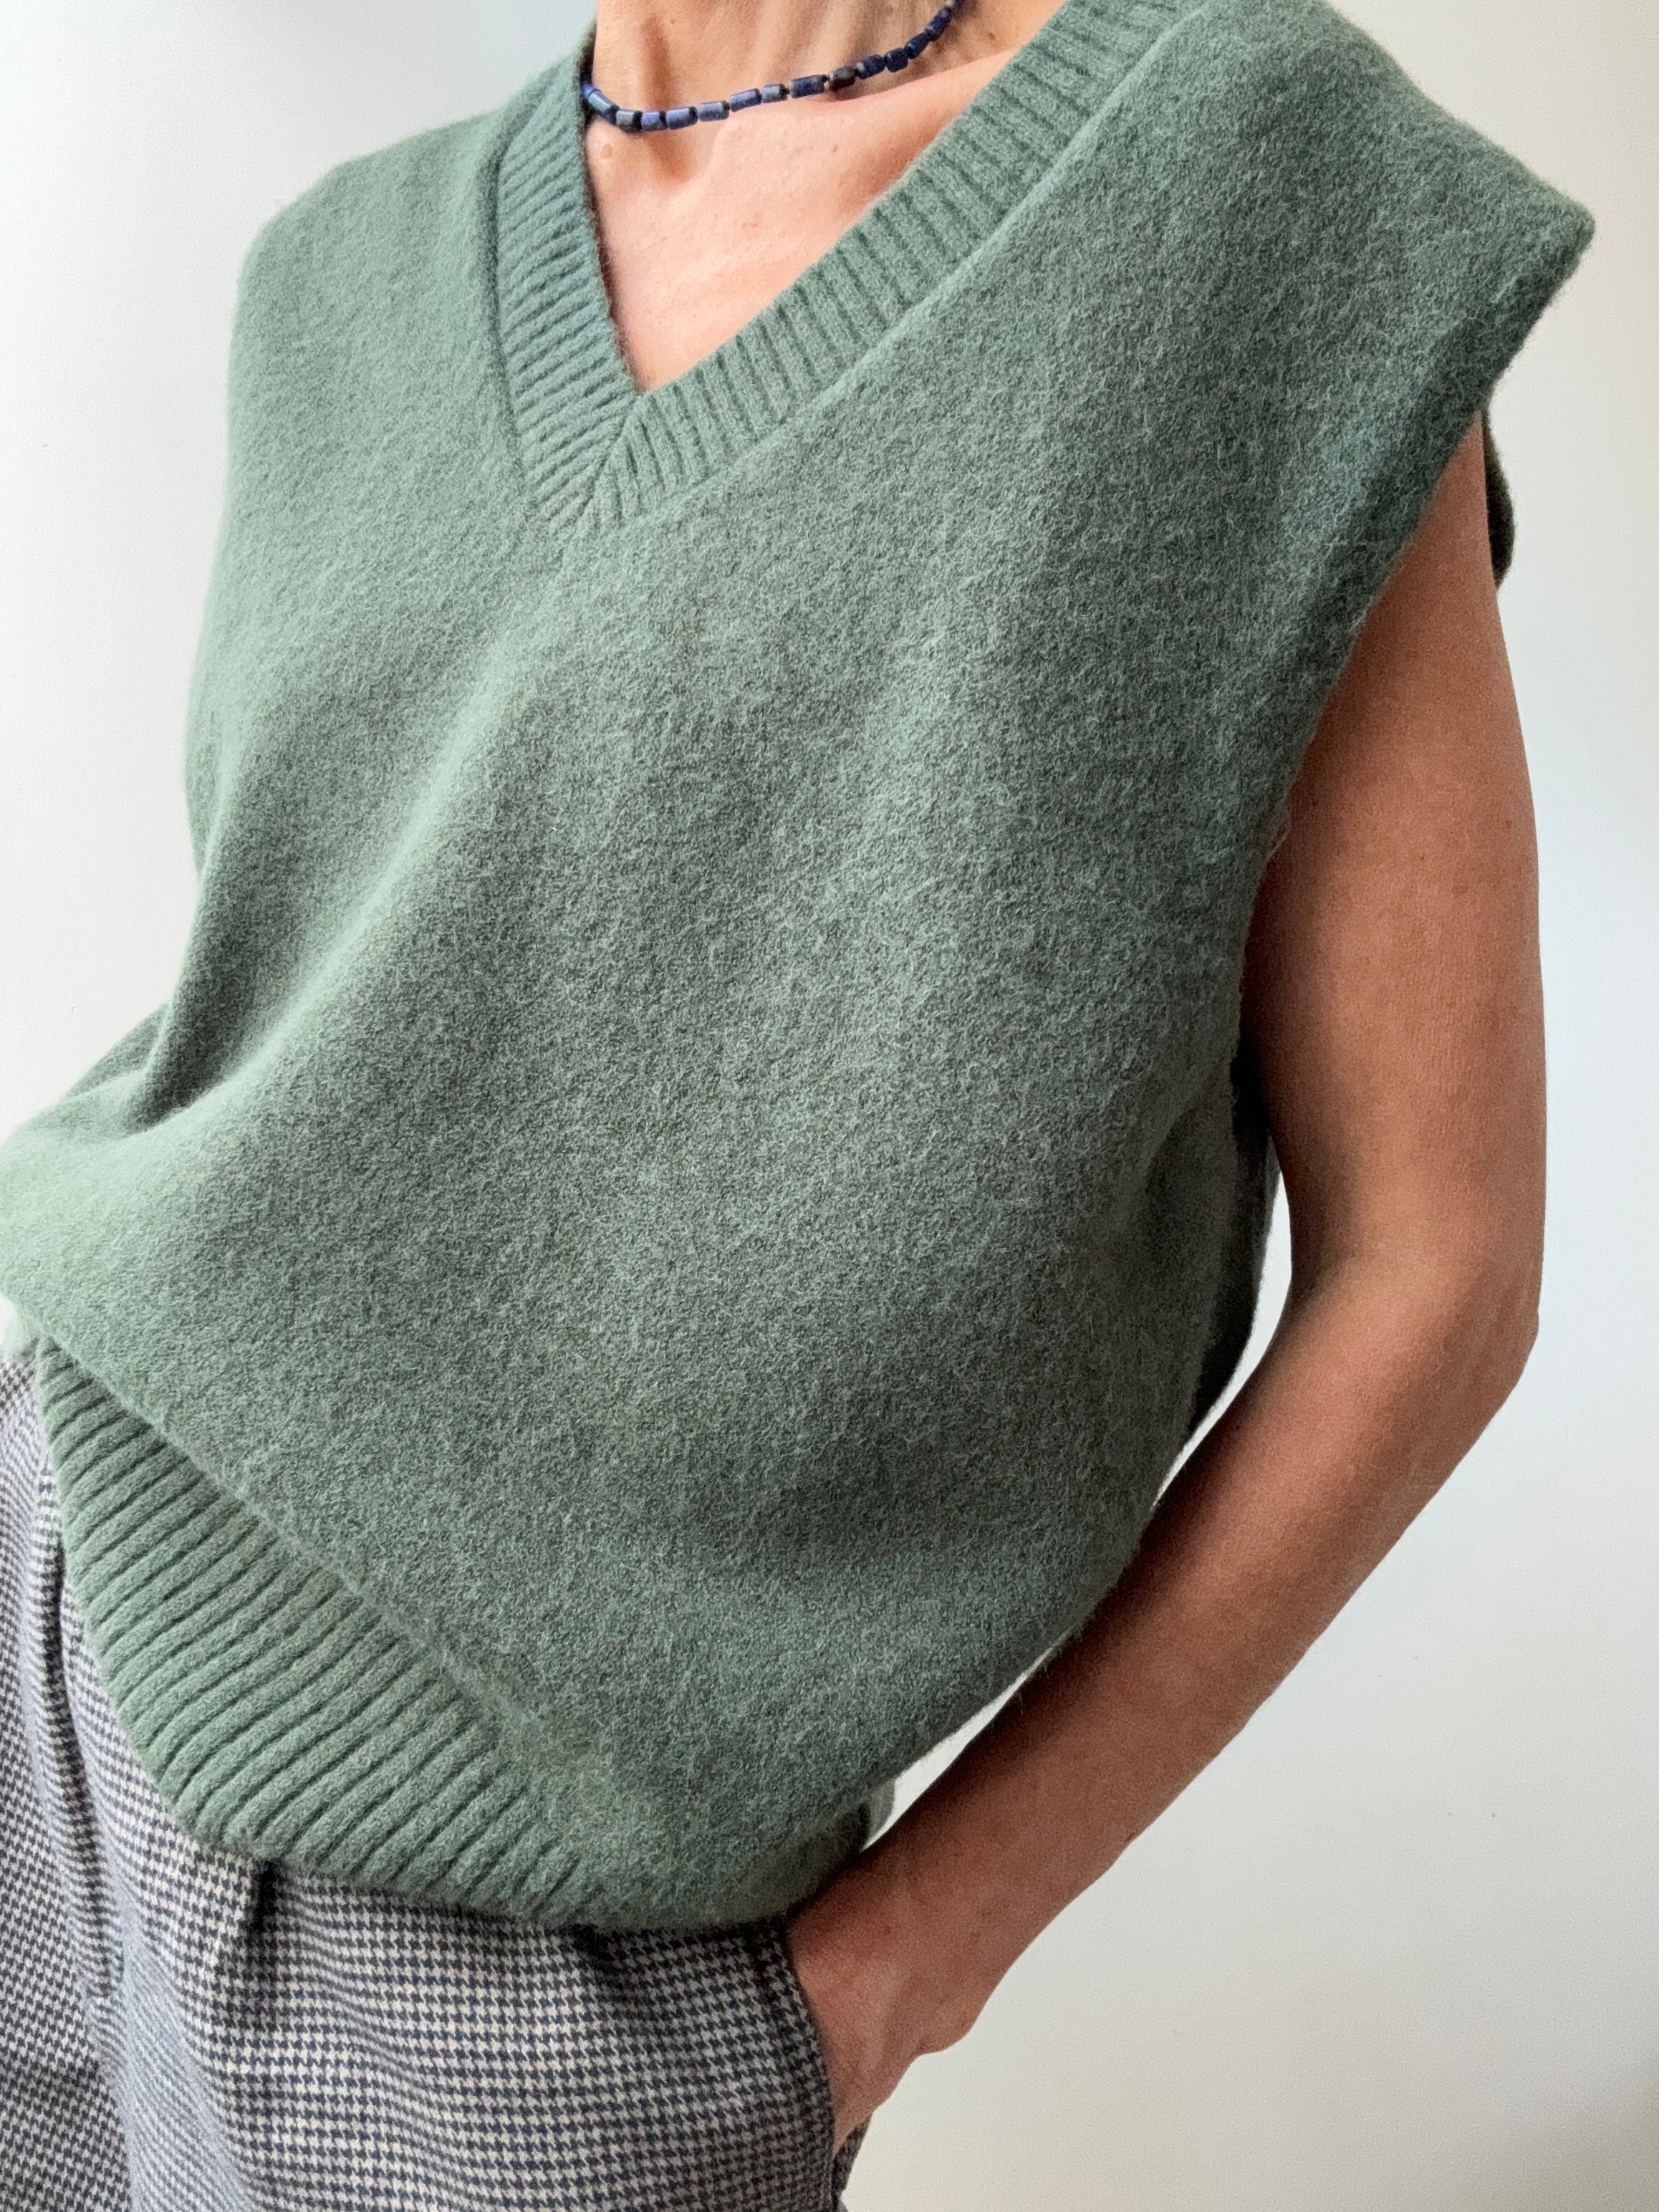 Future Nomads Vests One Size Blended Winter Knit Vest Green